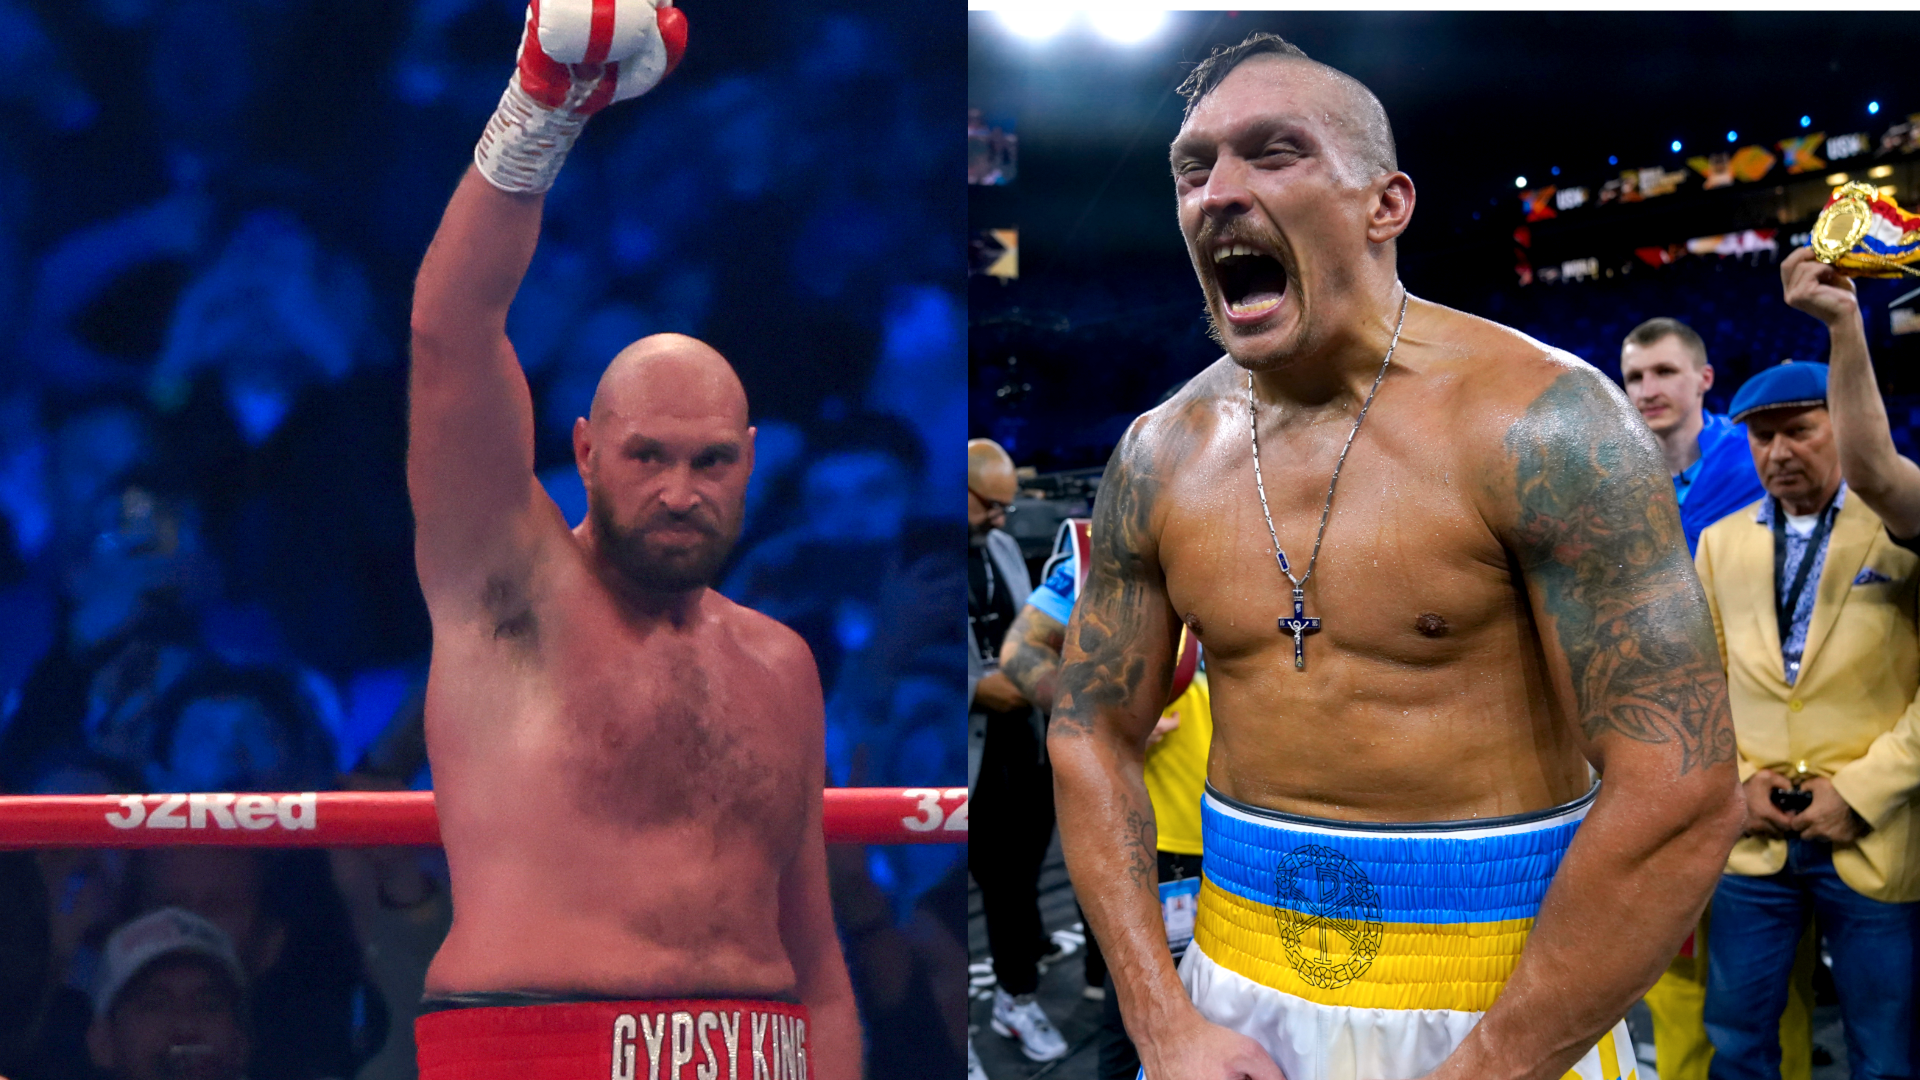 FIGHTEN ER AVLYST: Det blir ikke noen duell mellom Tyson Fury (t.v.) og Oleksandr Usyk. Sistnevntes promotør forteller at kravene fra Fury-leiren er respektløse.